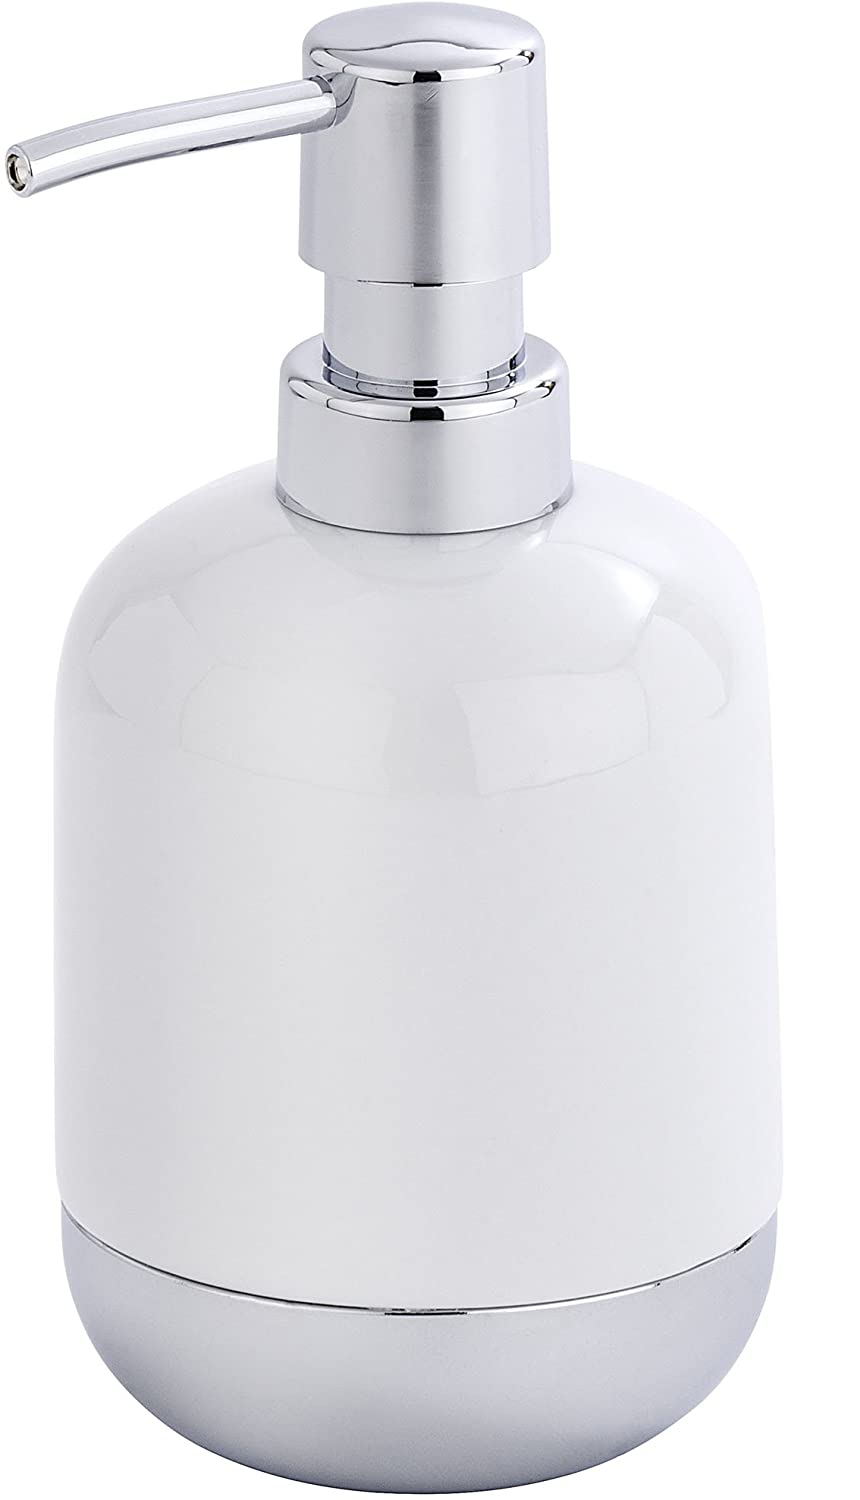 Seifenspender Melfi, Flüssigseifen-Spender, Spülmittel-Spender Fassungsvermögen: 0,33 l, Keramik, 9 x 16,6 x 8,4 cm, weiß